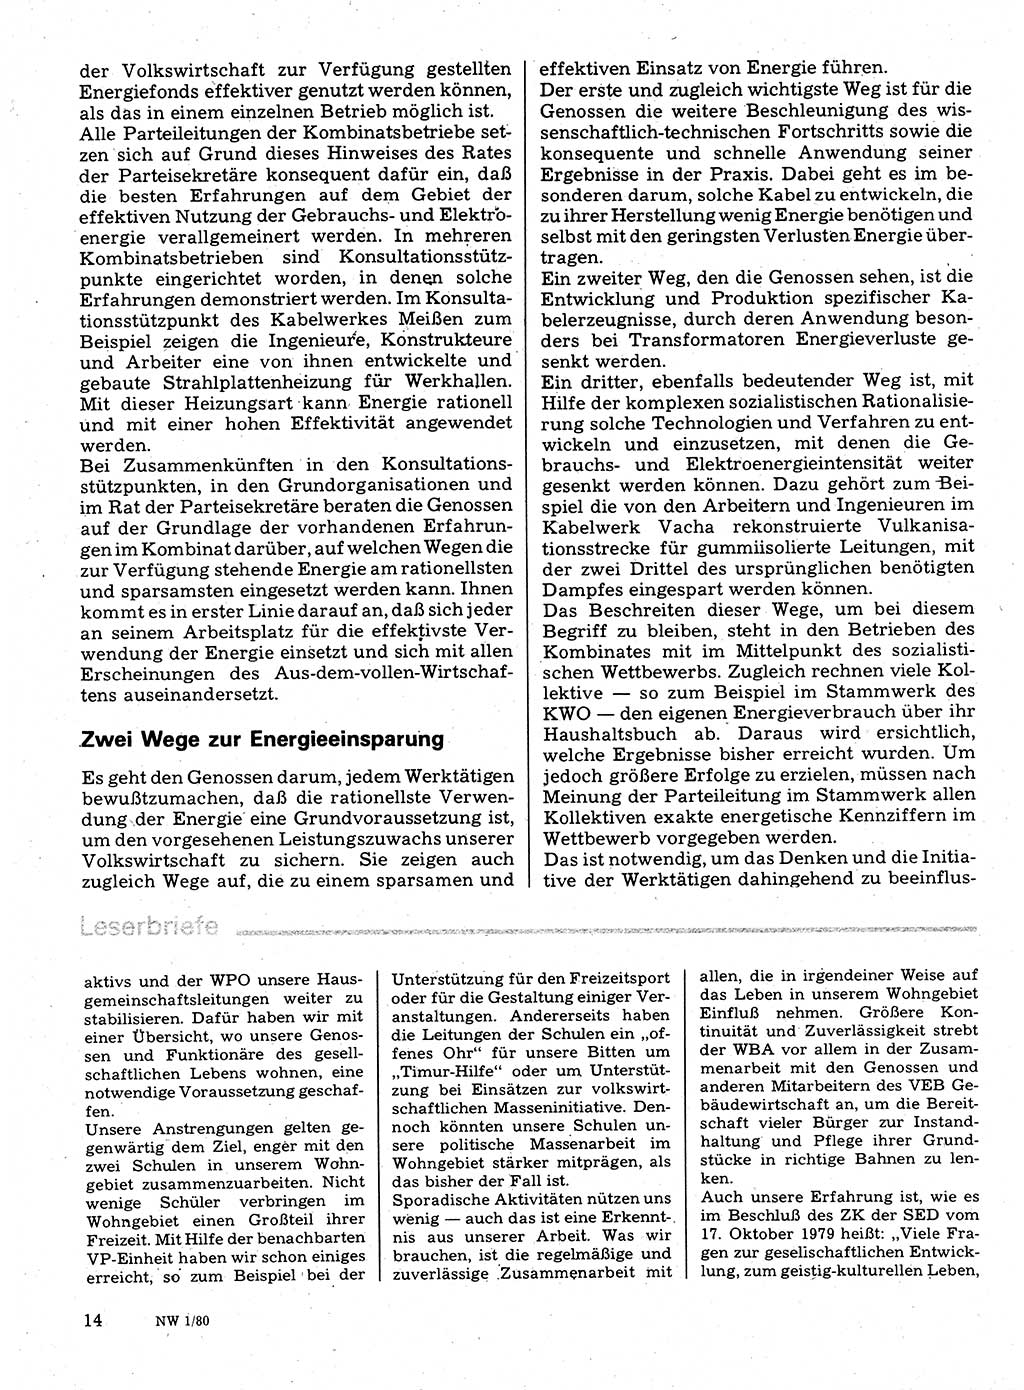 Neuer Weg (NW), Organ des Zentralkomitees (ZK) der SED (Sozialistische Einheitspartei Deutschlands) für Fragen des Parteilebens, 35. Jahrgang [Deutsche Demokratische Republik (DDR)] 1980, Seite 14 (NW ZK SED DDR 1980, S. 14)